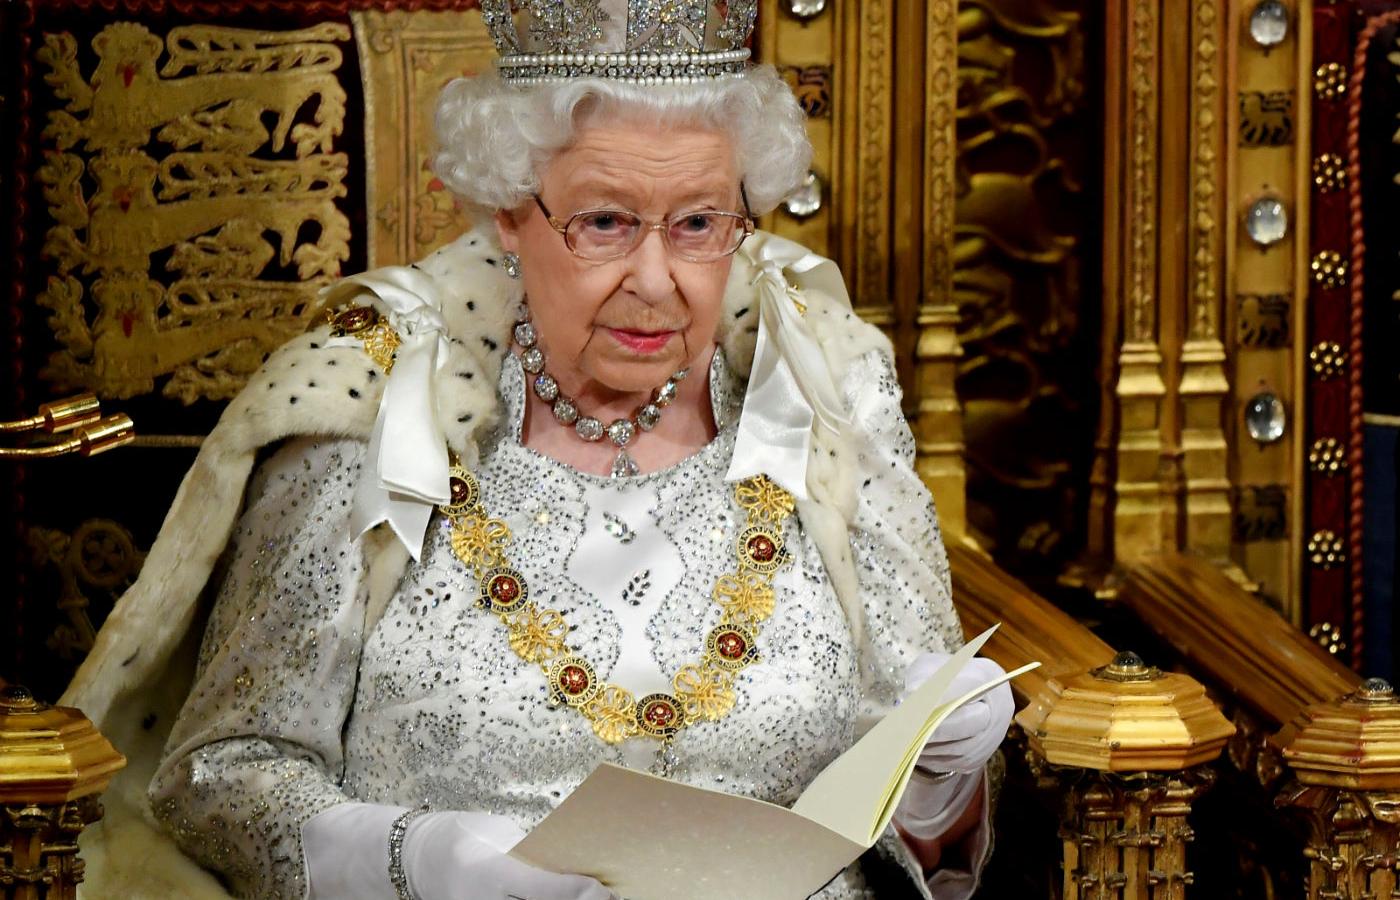 Królowa Elżbieta II wygłosiła mowę tronową, czyli przeczytała w parlamencie plan ustawodawczy rządu.